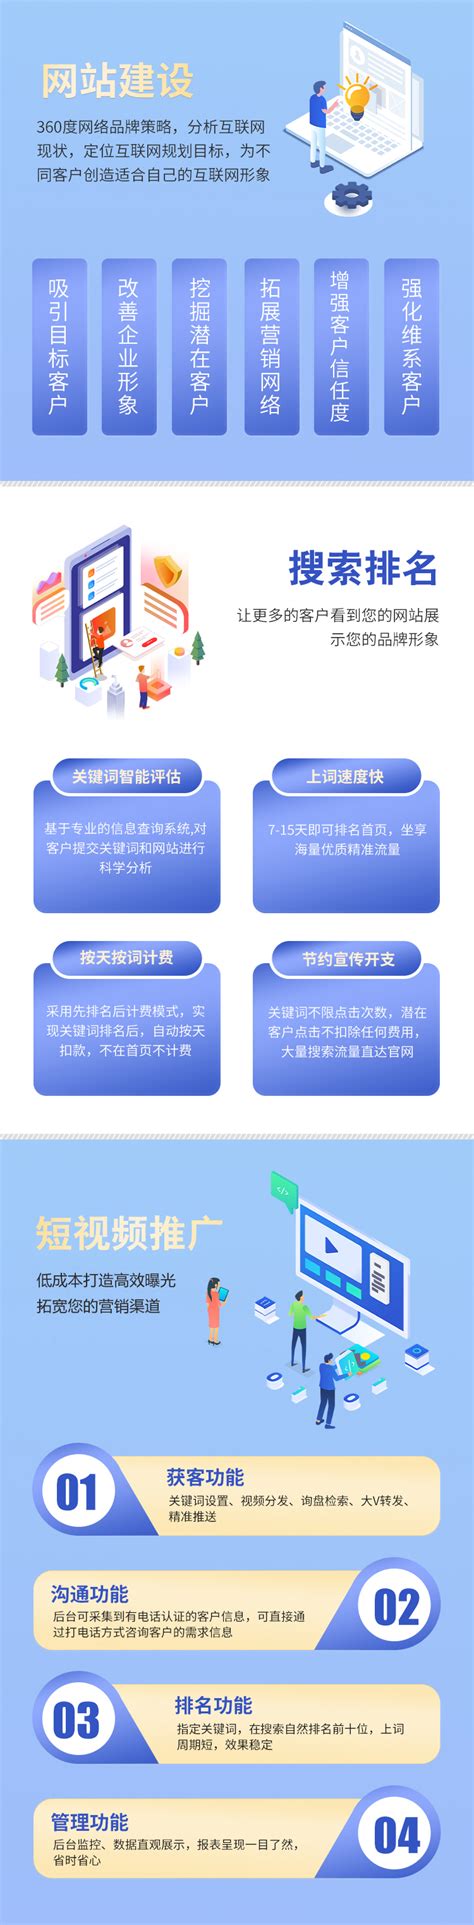 广东网站建设推广厂商名单